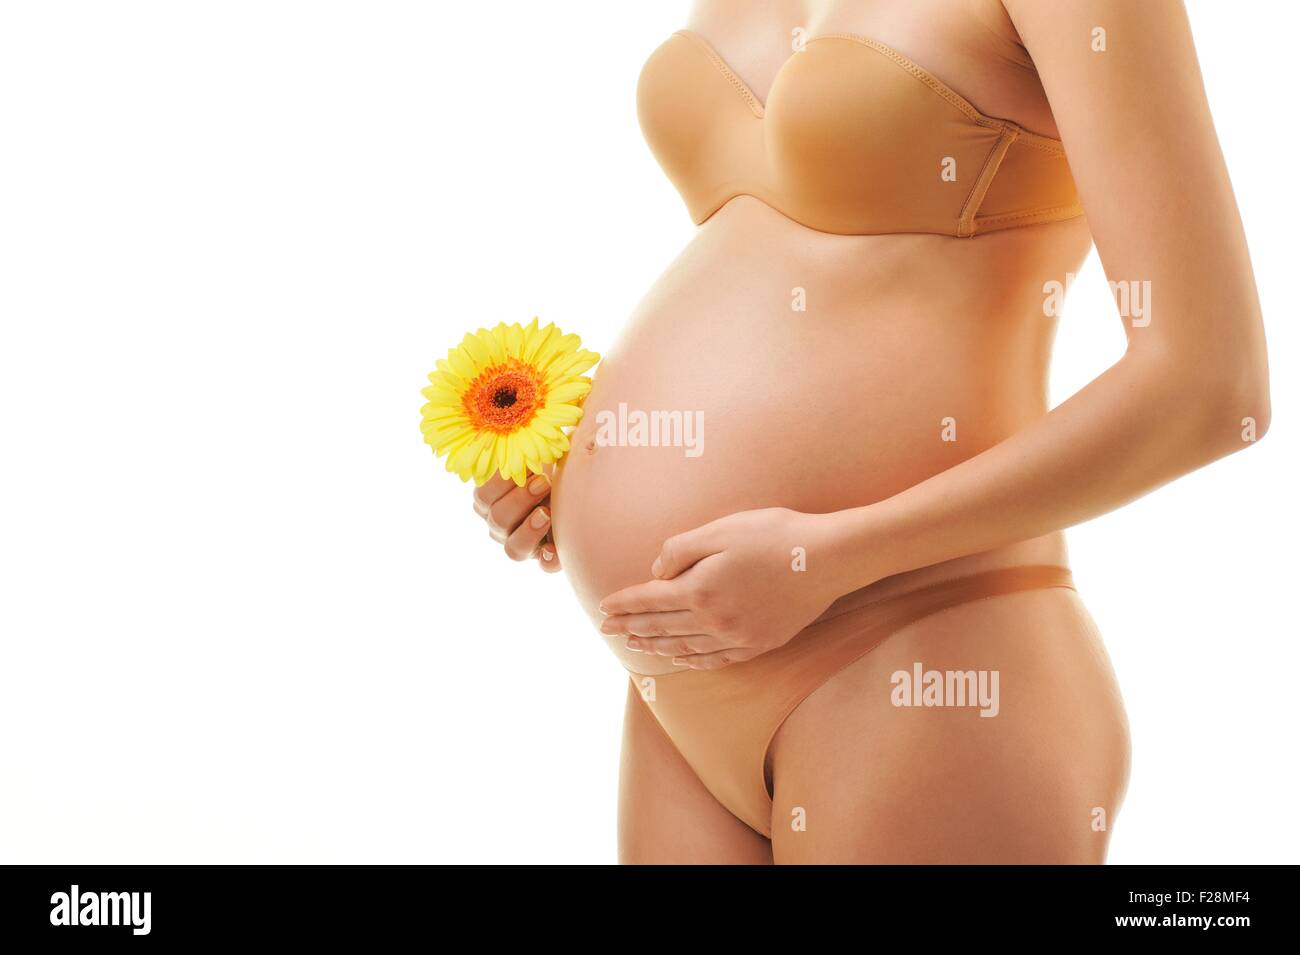 грудь при беременности фото до и во время беременности фото 116